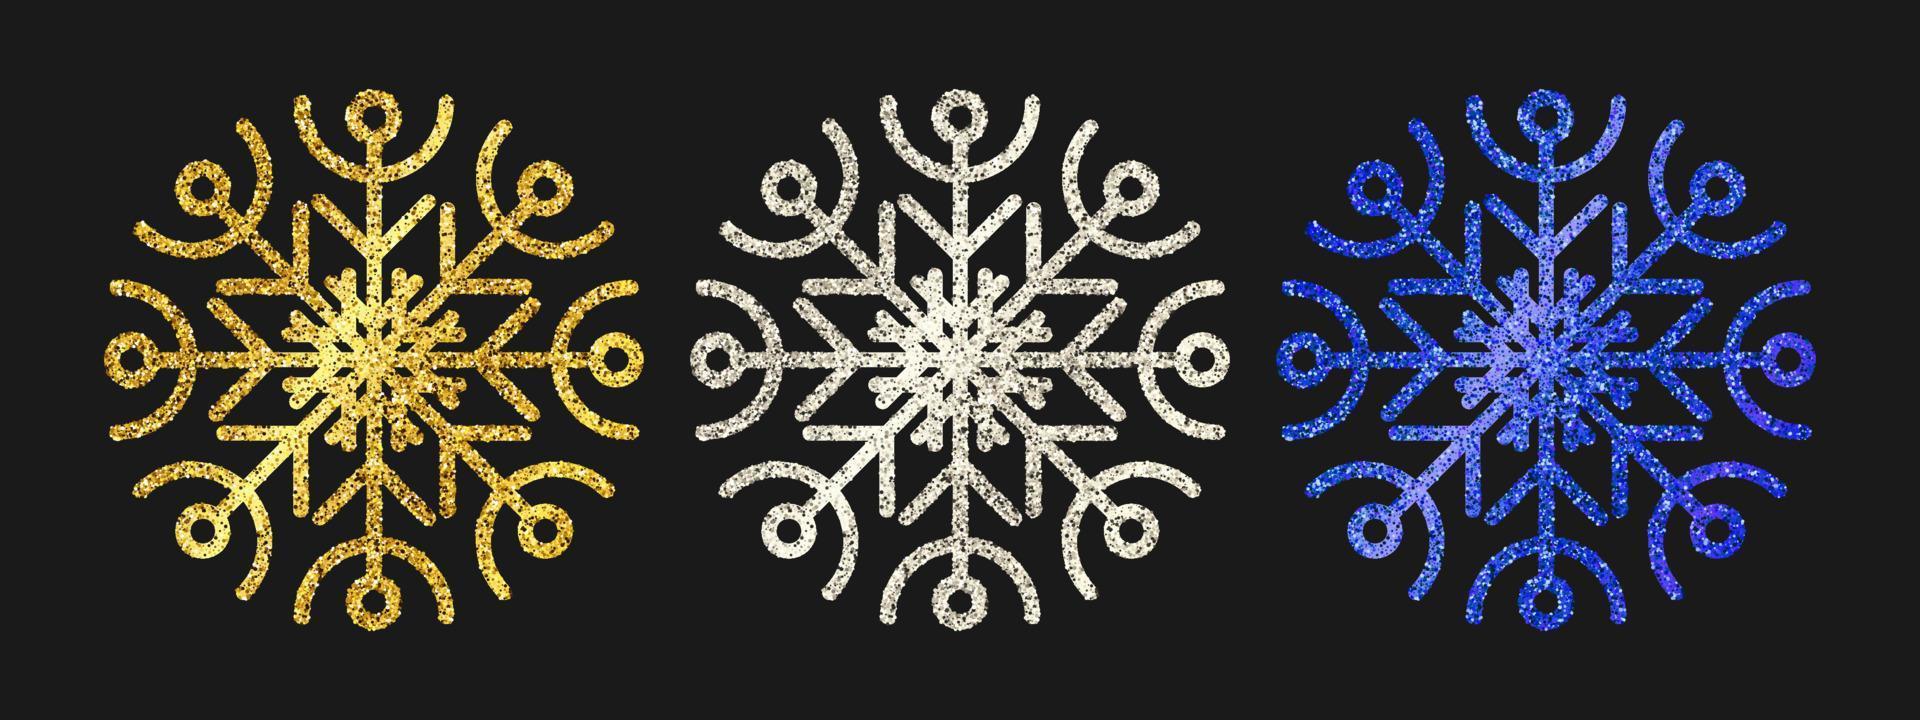 flocons de neige scintillants sur fond sombre. ensemble de trois flocons de neige à paillettes dorées, argentées et bleues. éléments de décoration de noël et du nouvel an. illustration vectorielle. vecteur